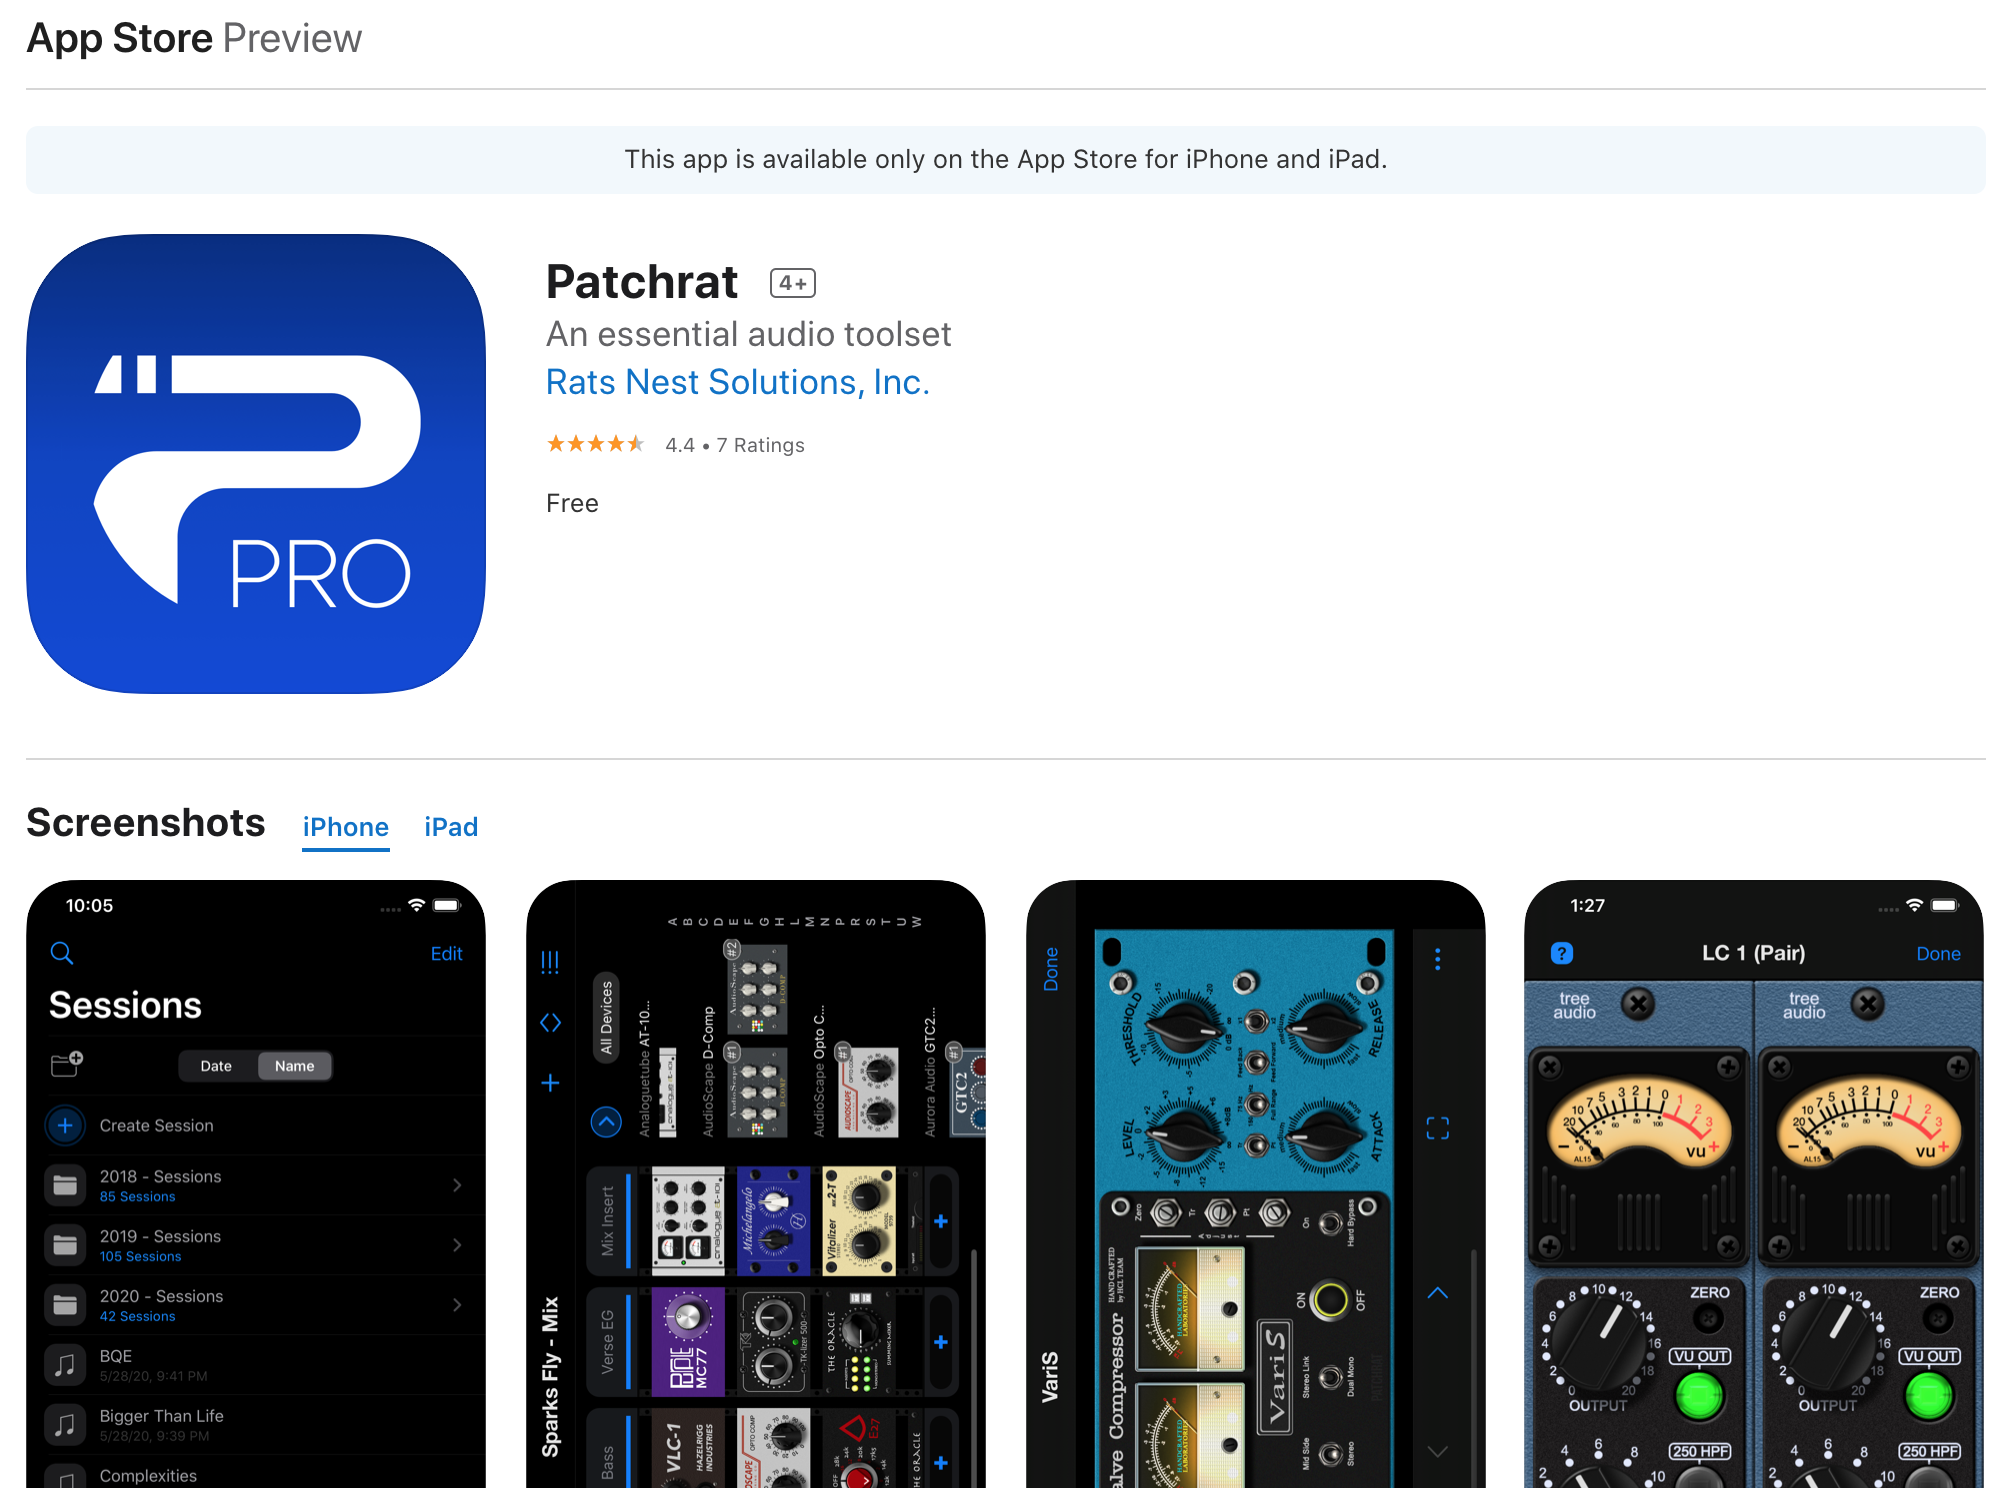 Patchrat iOS app